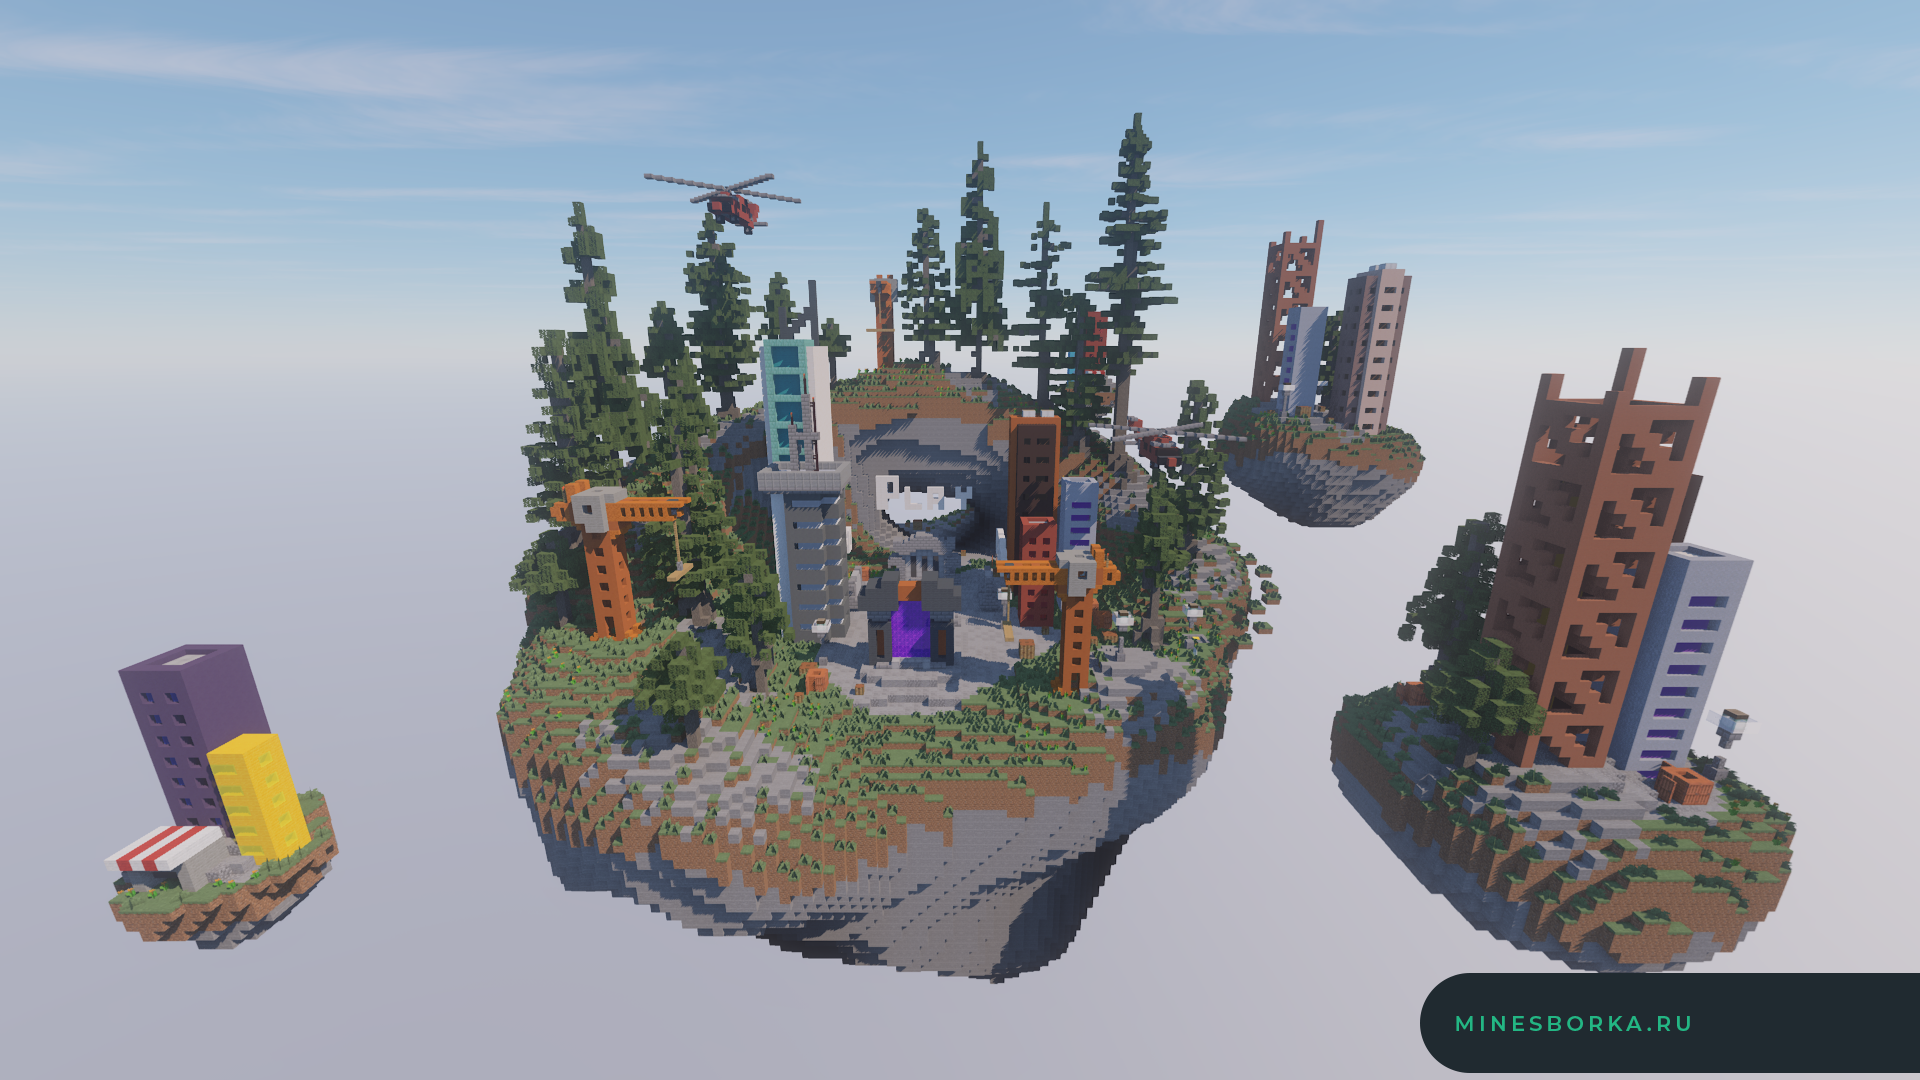 Скачать лобби для сервера Minecraft в стиле небольшого города